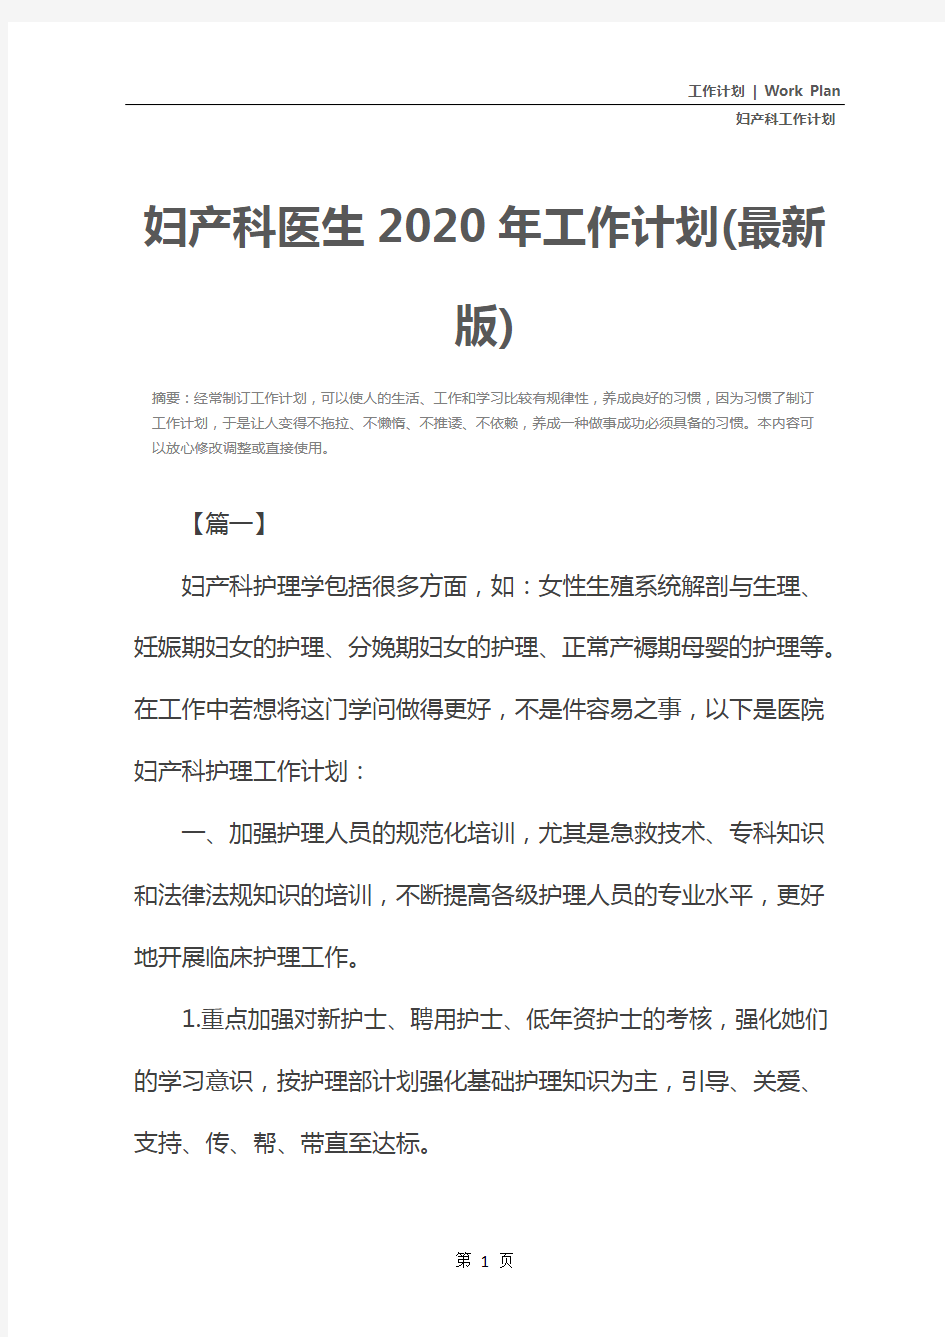 妇产科医生2020年工作计划(最新版)